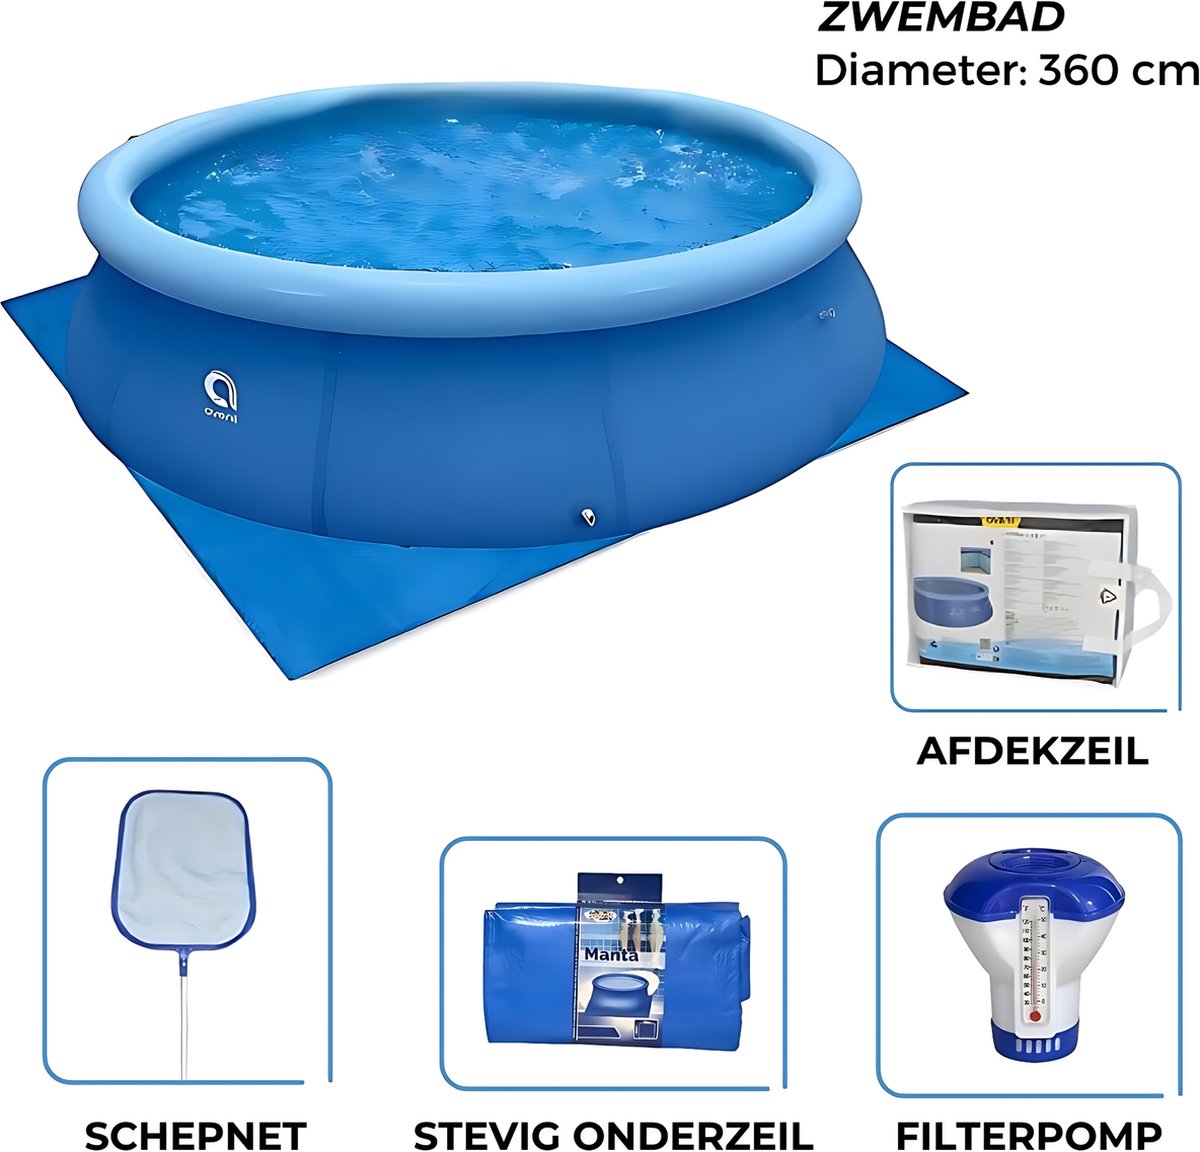 Avenli - Zwembad 360cm met Filterpomp - Afdekzeil - Chloordrijver - Schepnet en Gronddoek - Complete Set